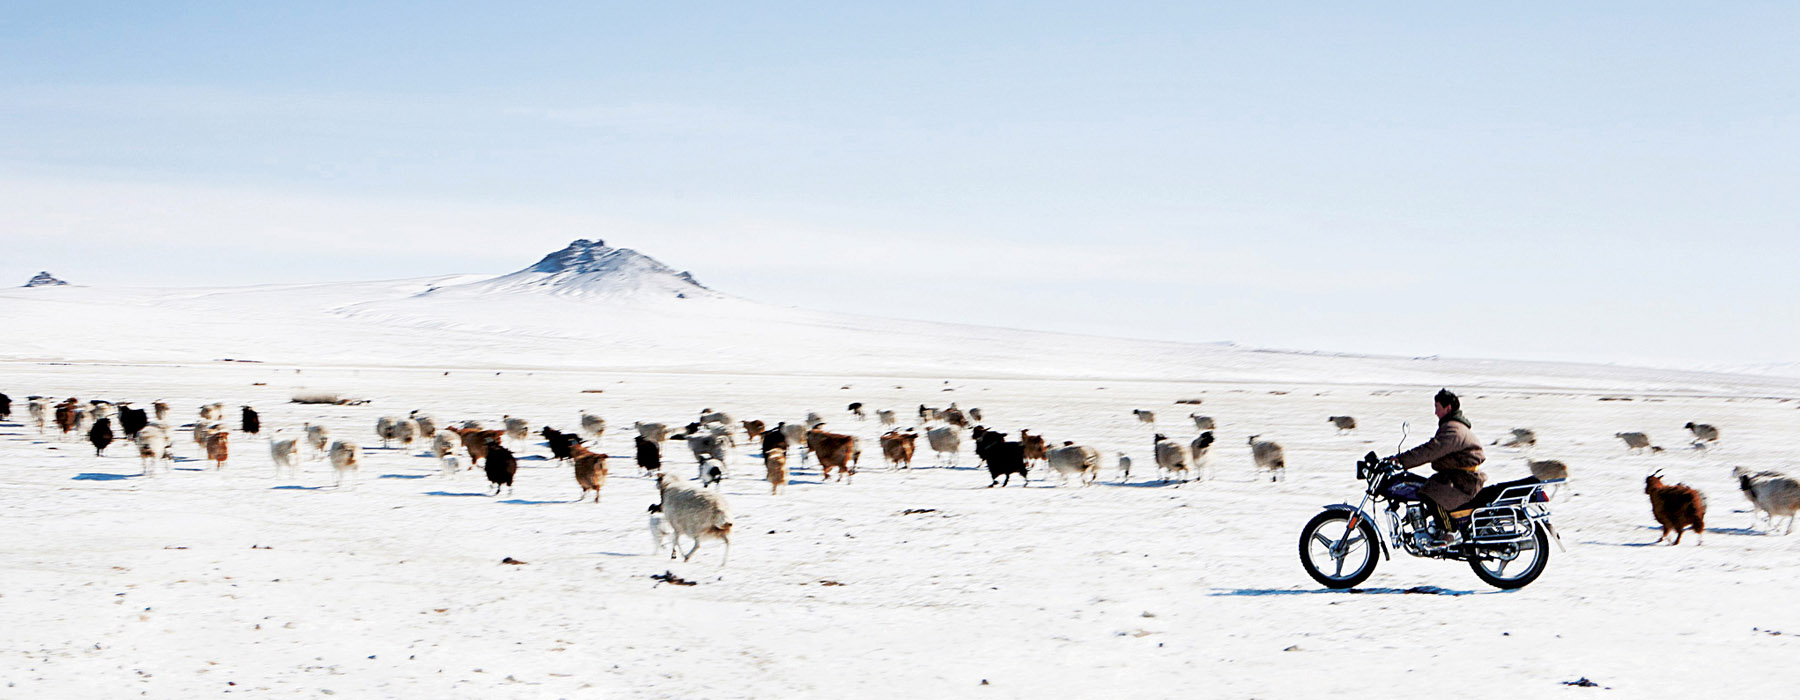 Les itinérants classiques Mongolie